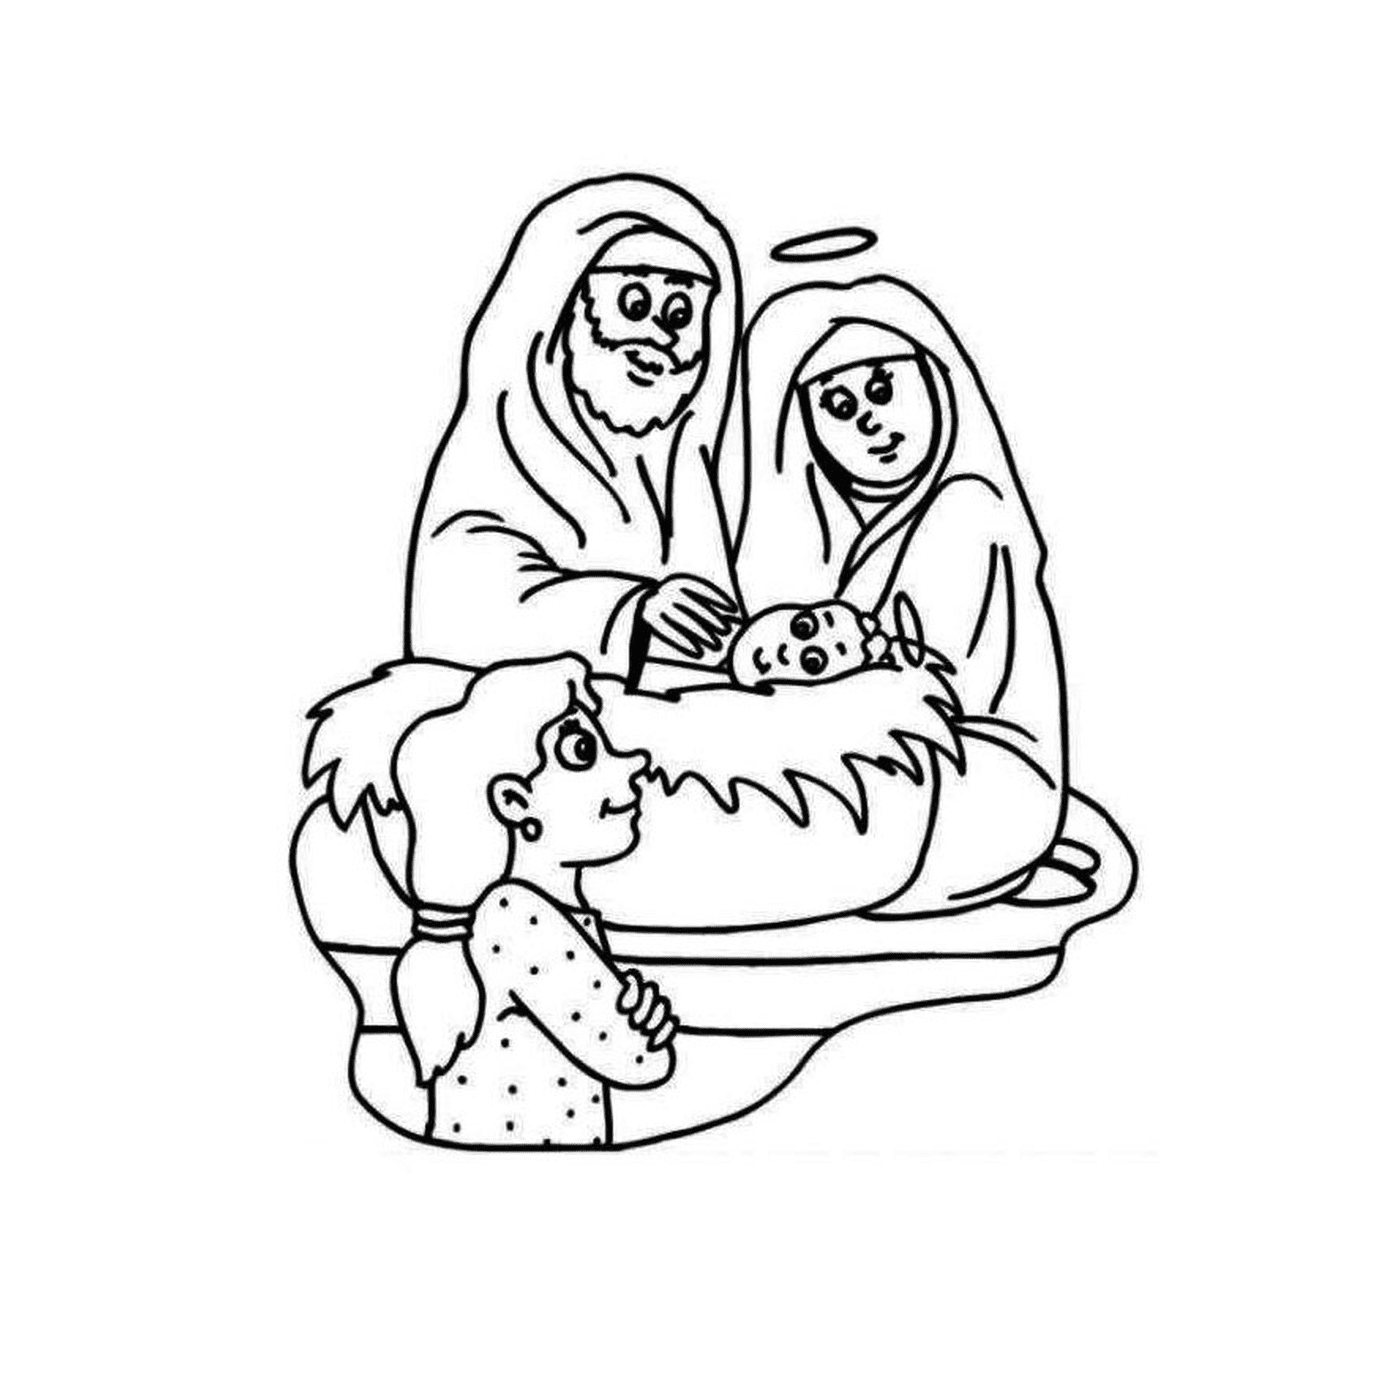  عيد الميلاد مع يسوع وعائلته 